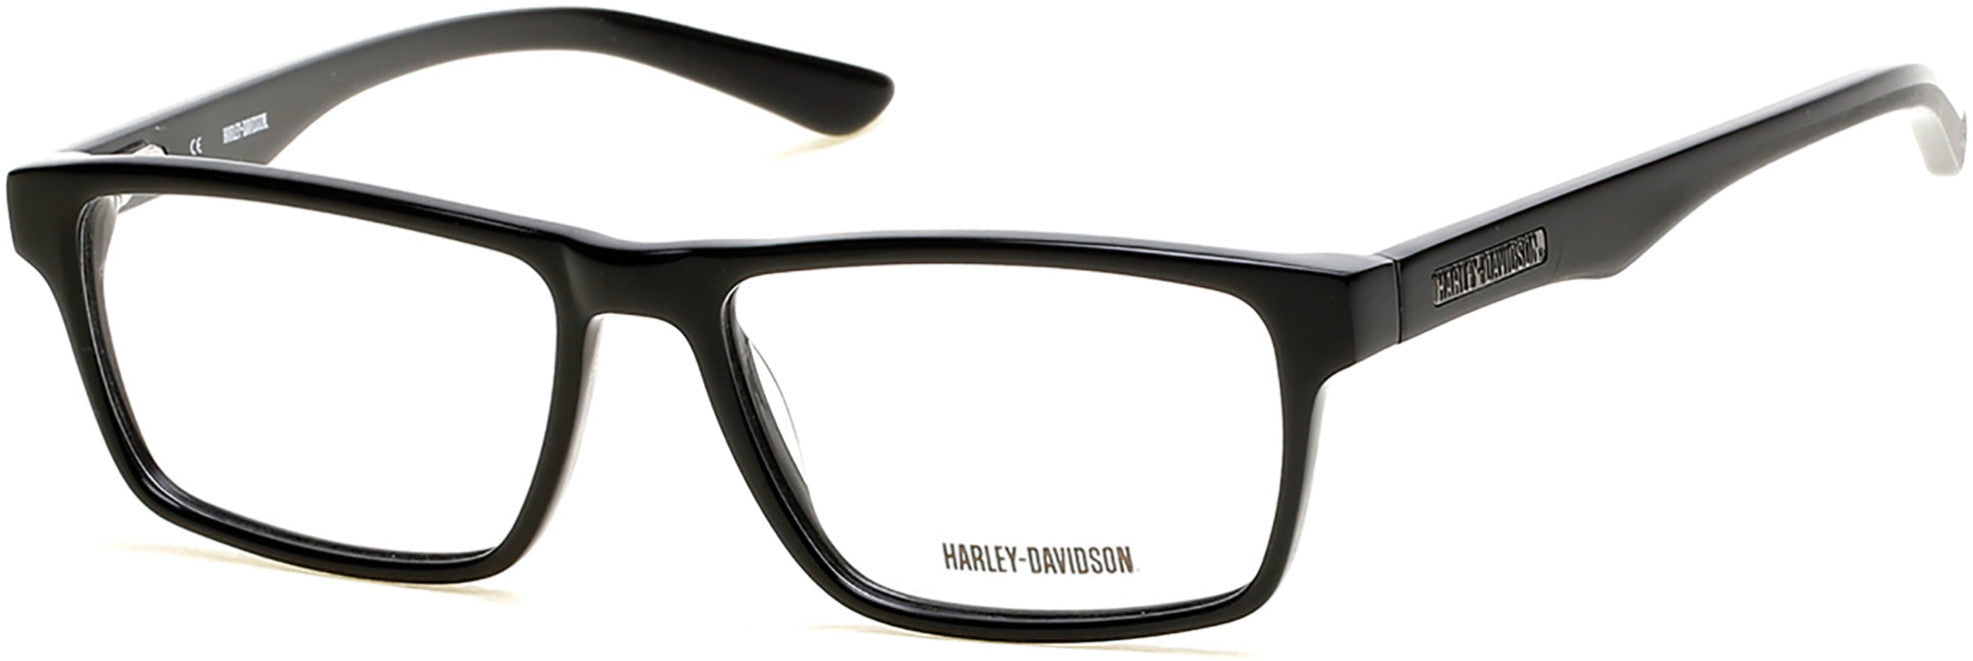 Harley-Davidson HD0727 Eyeglasses 001-001 - Shiny Black